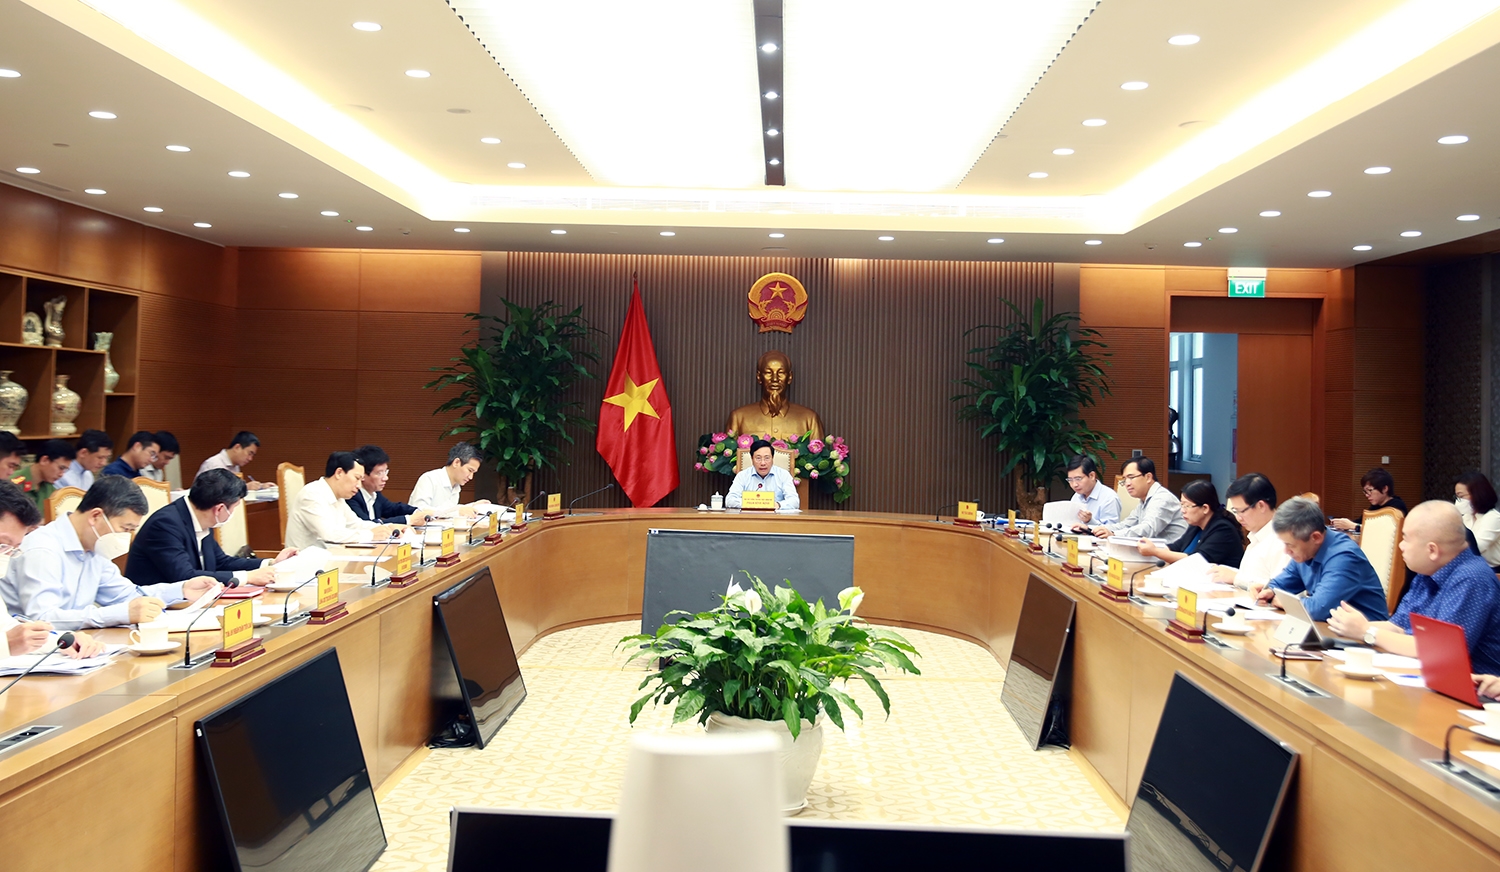 Phó Thủ tướng Thường trực Chính phủ Phạm Bình Minh chủ trì cuộc họp với 9 bộ, ngành có tốc độ giải ngâm chậm hơn so với mặt chung cả nước - Ảnh: VGP/Hải Minh